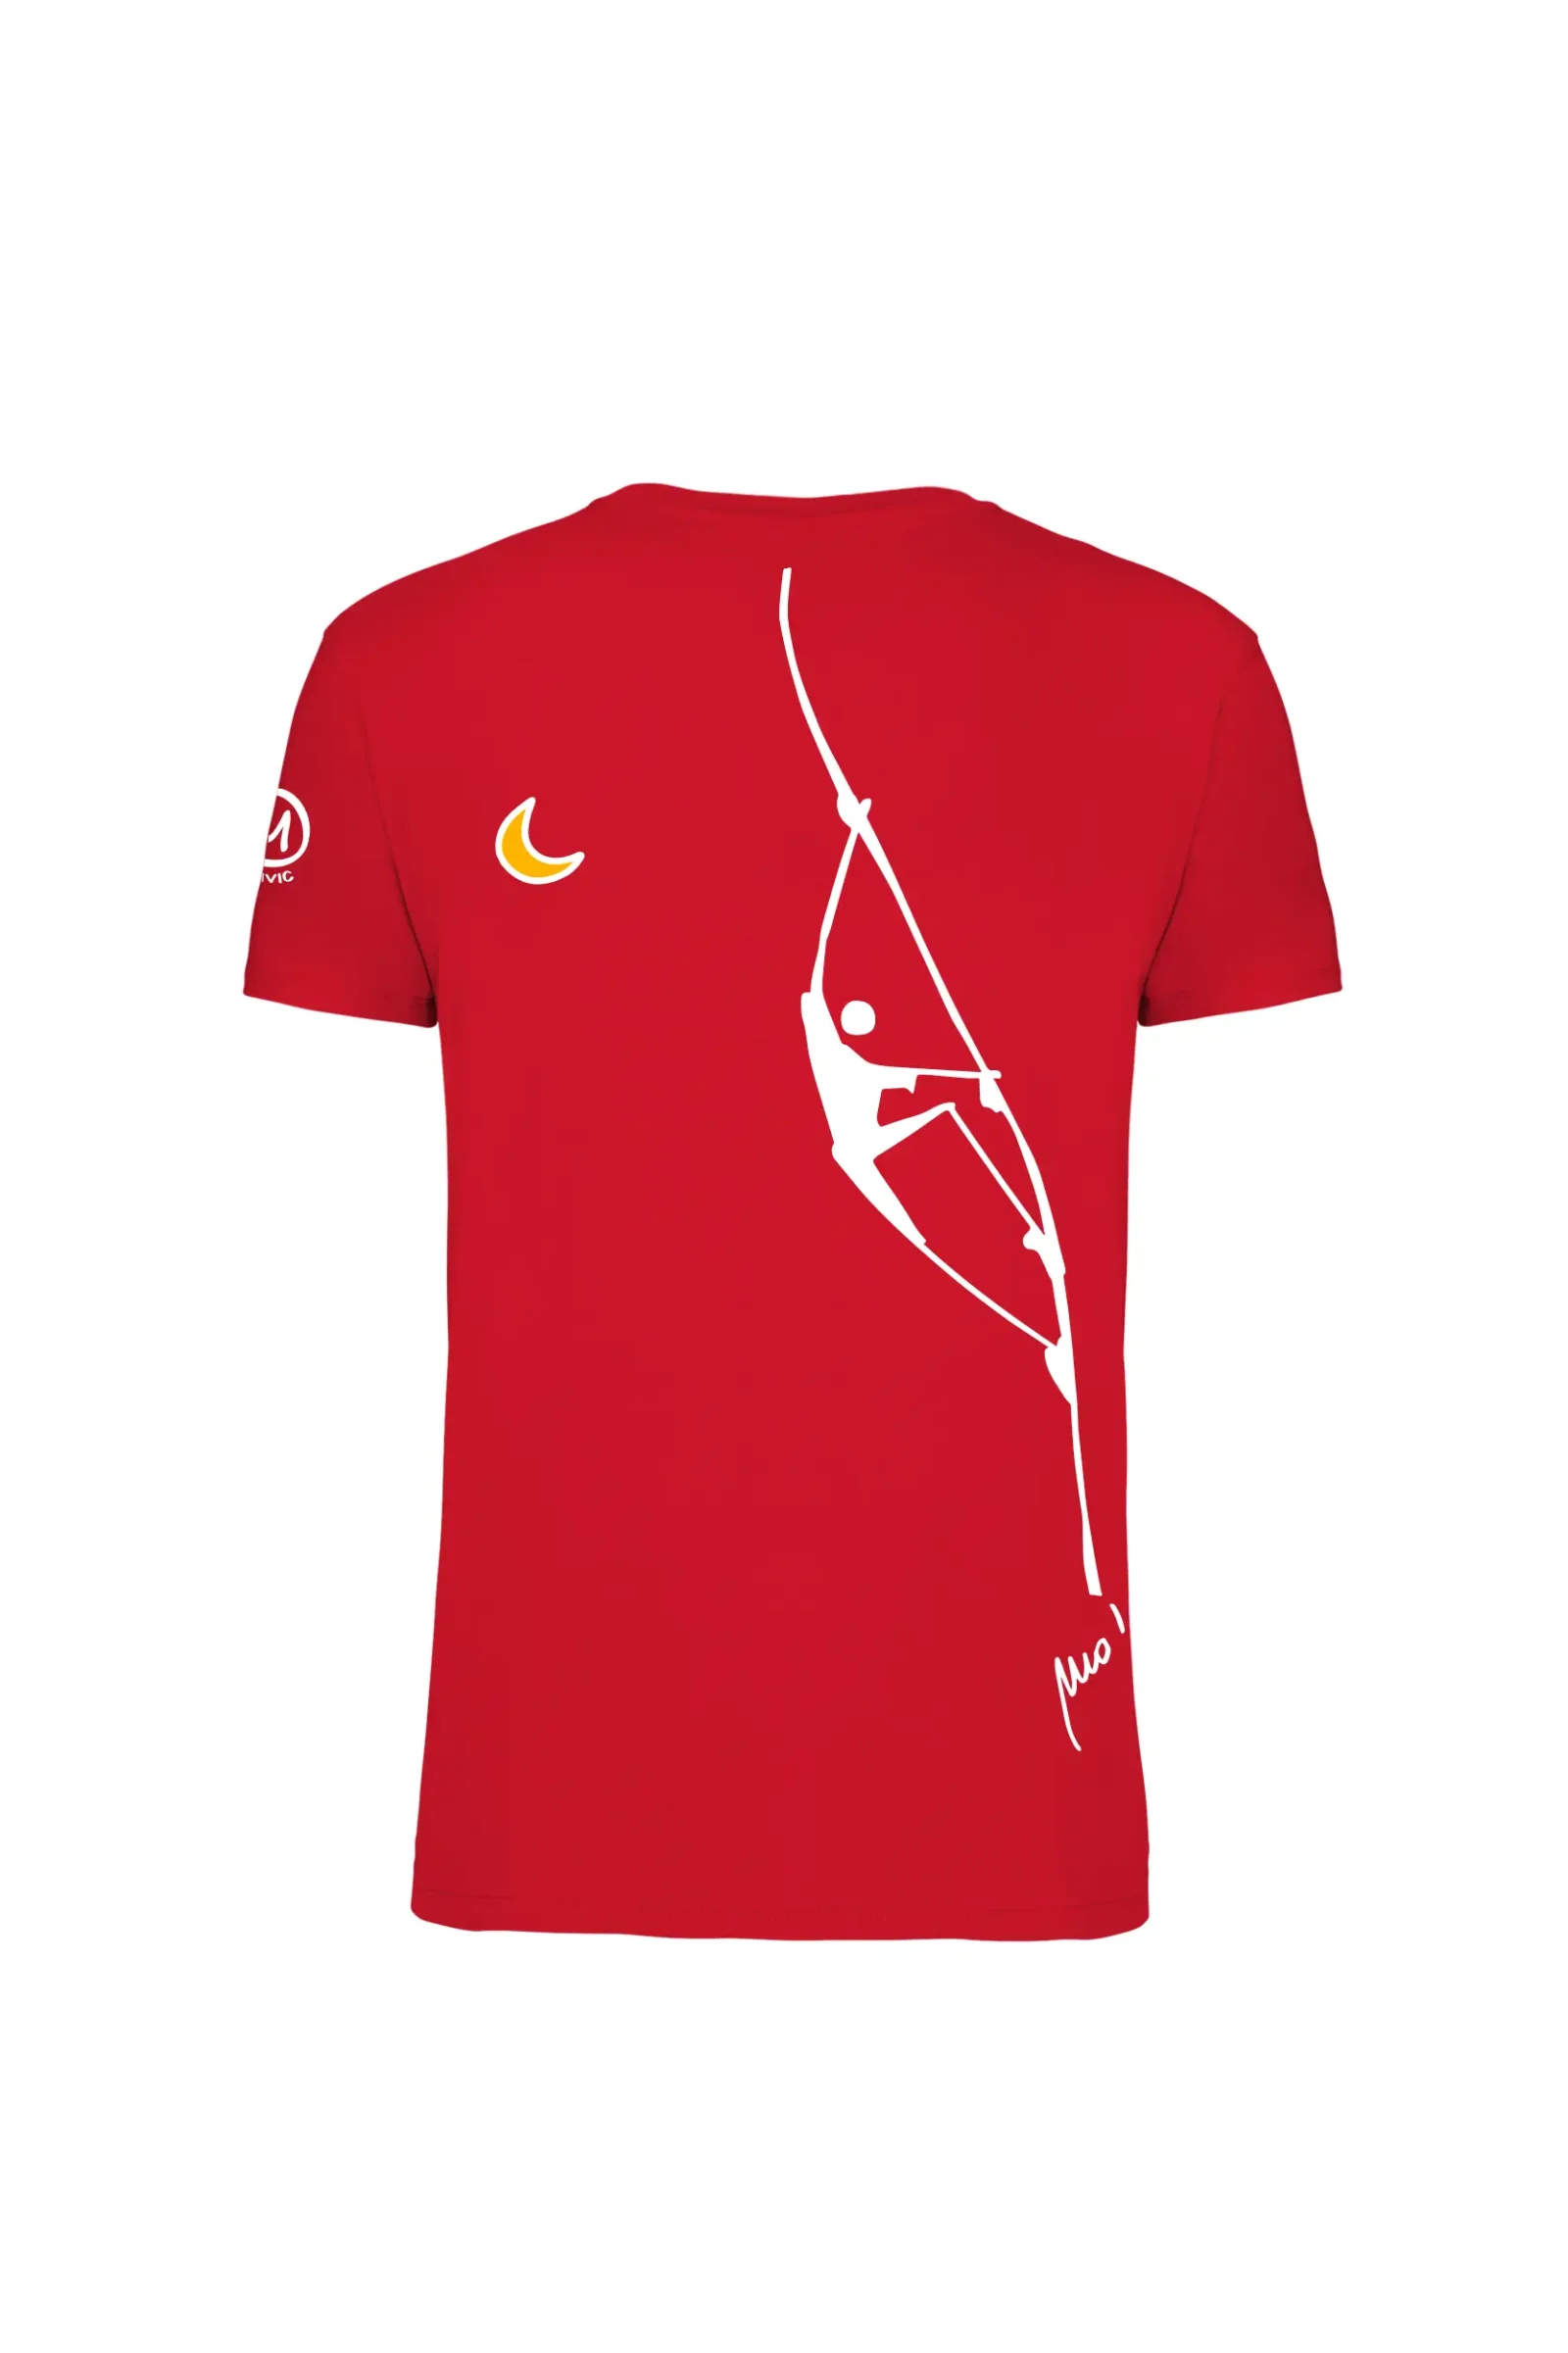 T-shirt uomo rossa con grafica arrampicata "Teba" - Monvic HASH